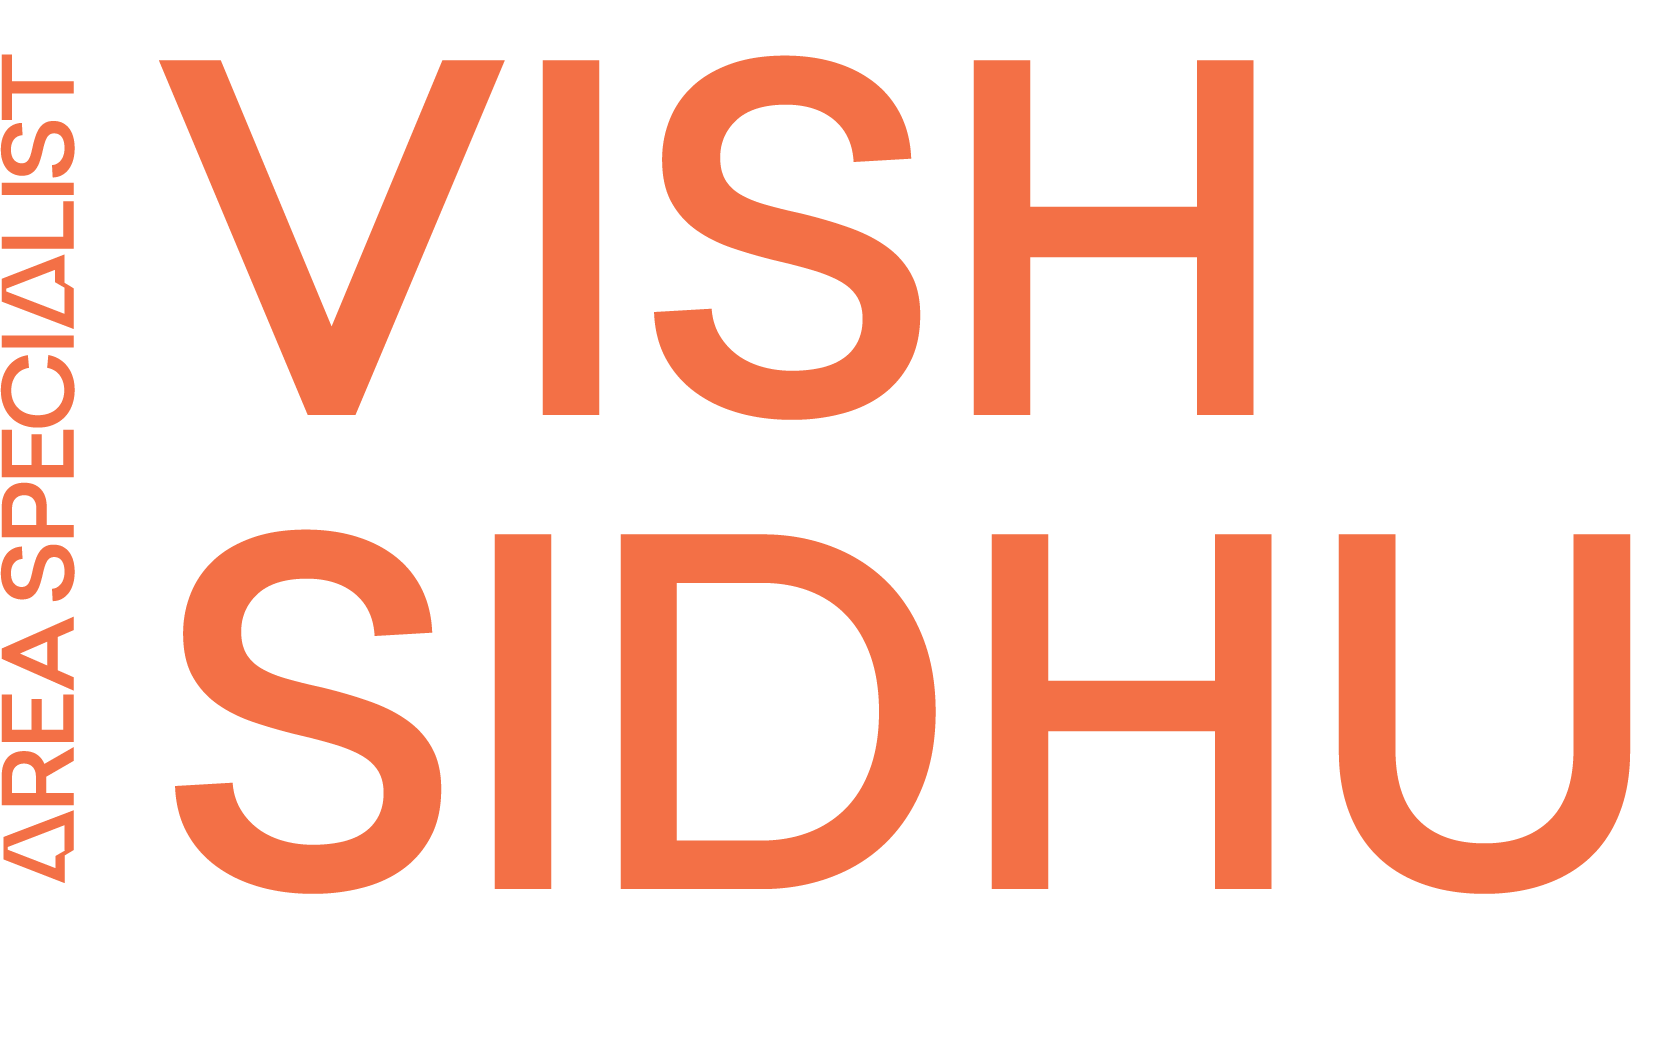 Vish's logo